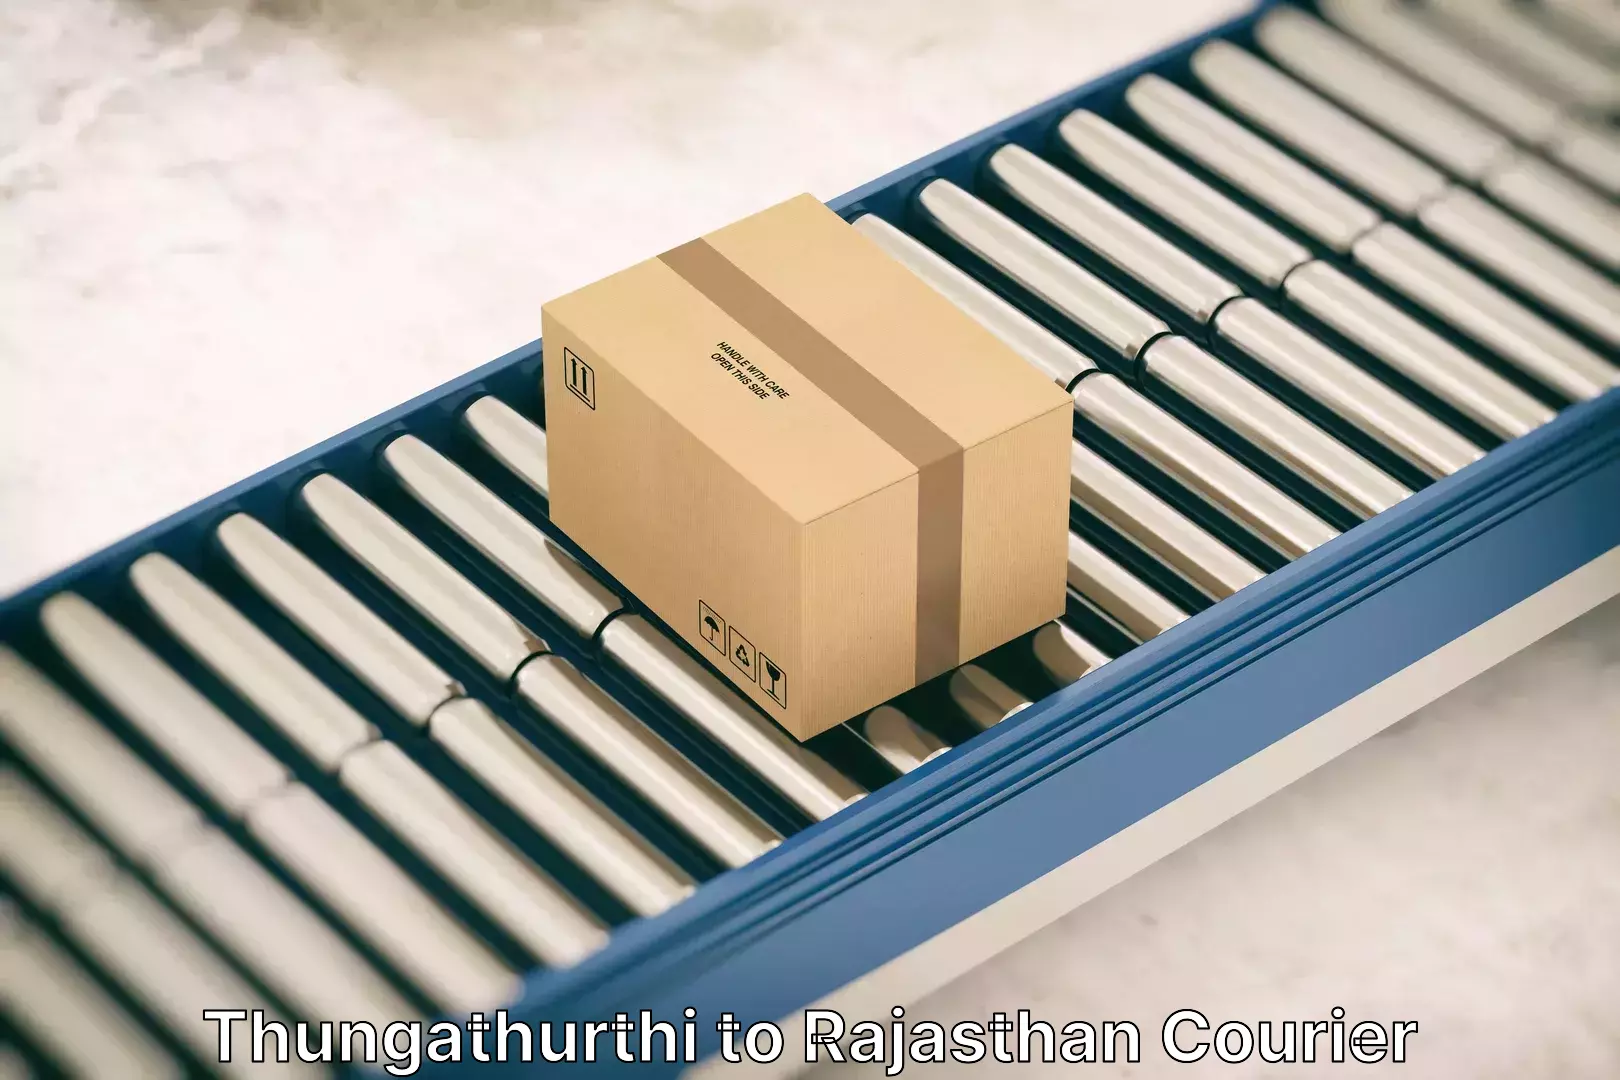 Stress-free furniture moving Thungathurthi to Rajasthan